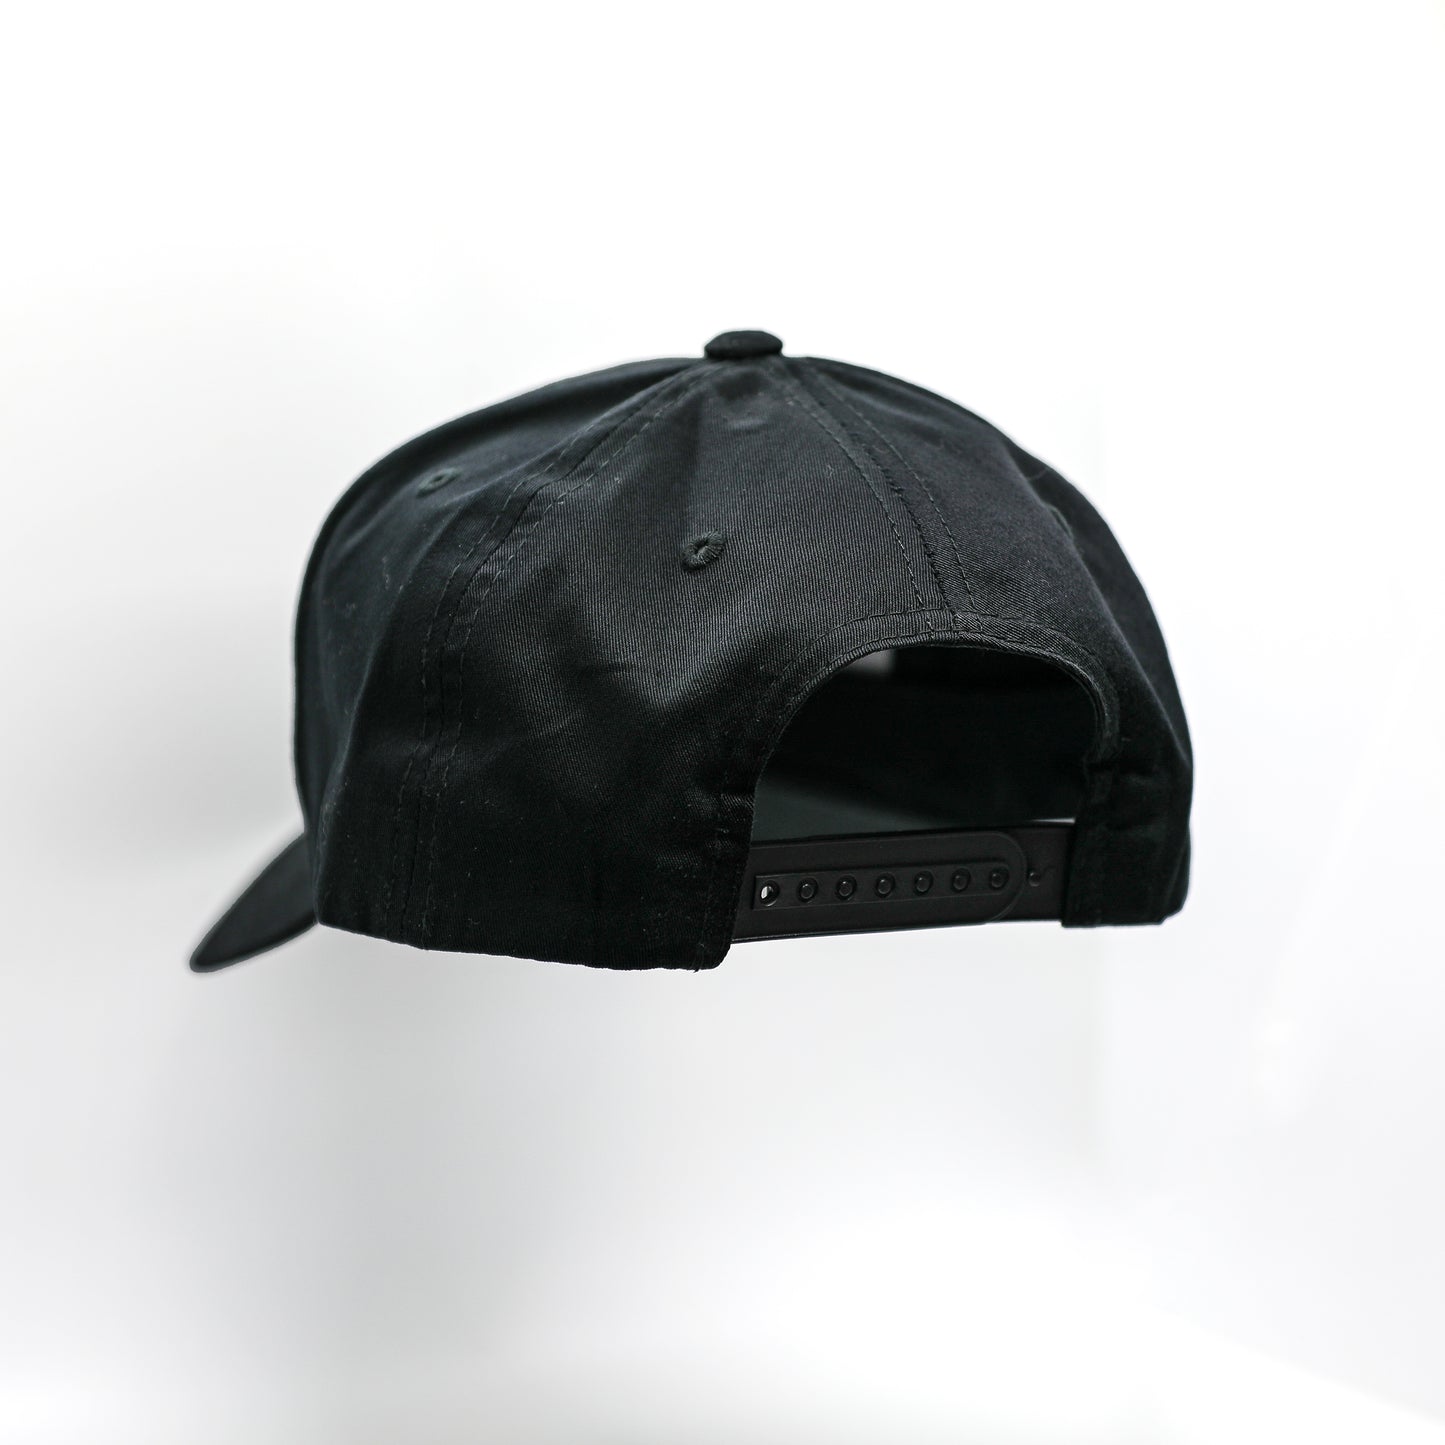 MBFC Signature Black Hat